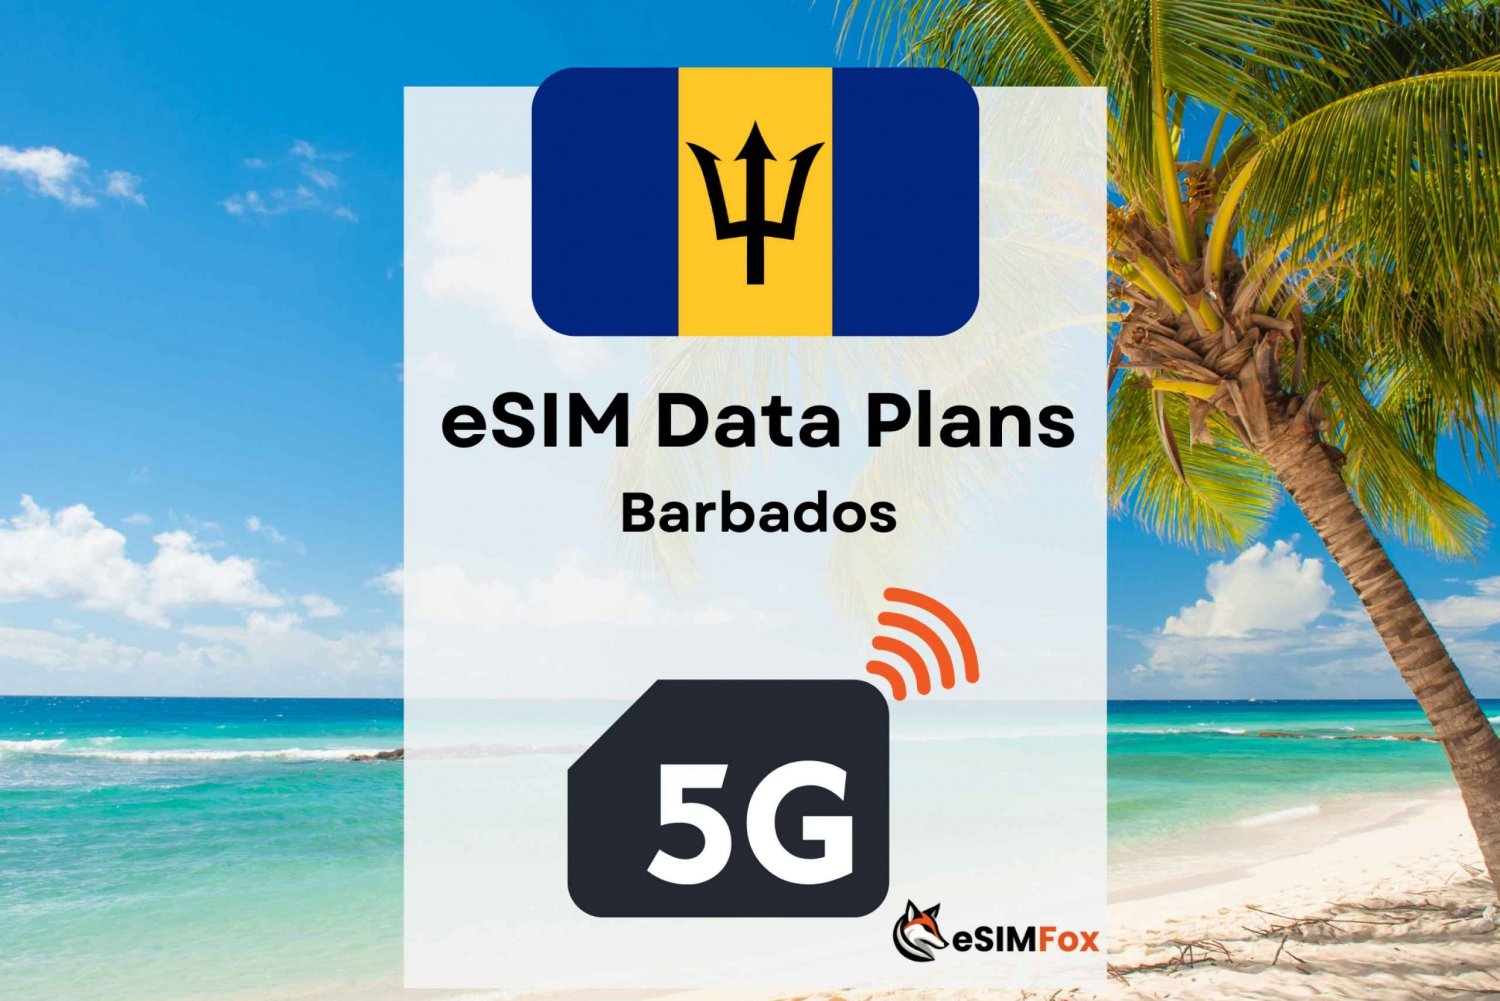 eSIM Internet Data Plan for Barbados for tourists